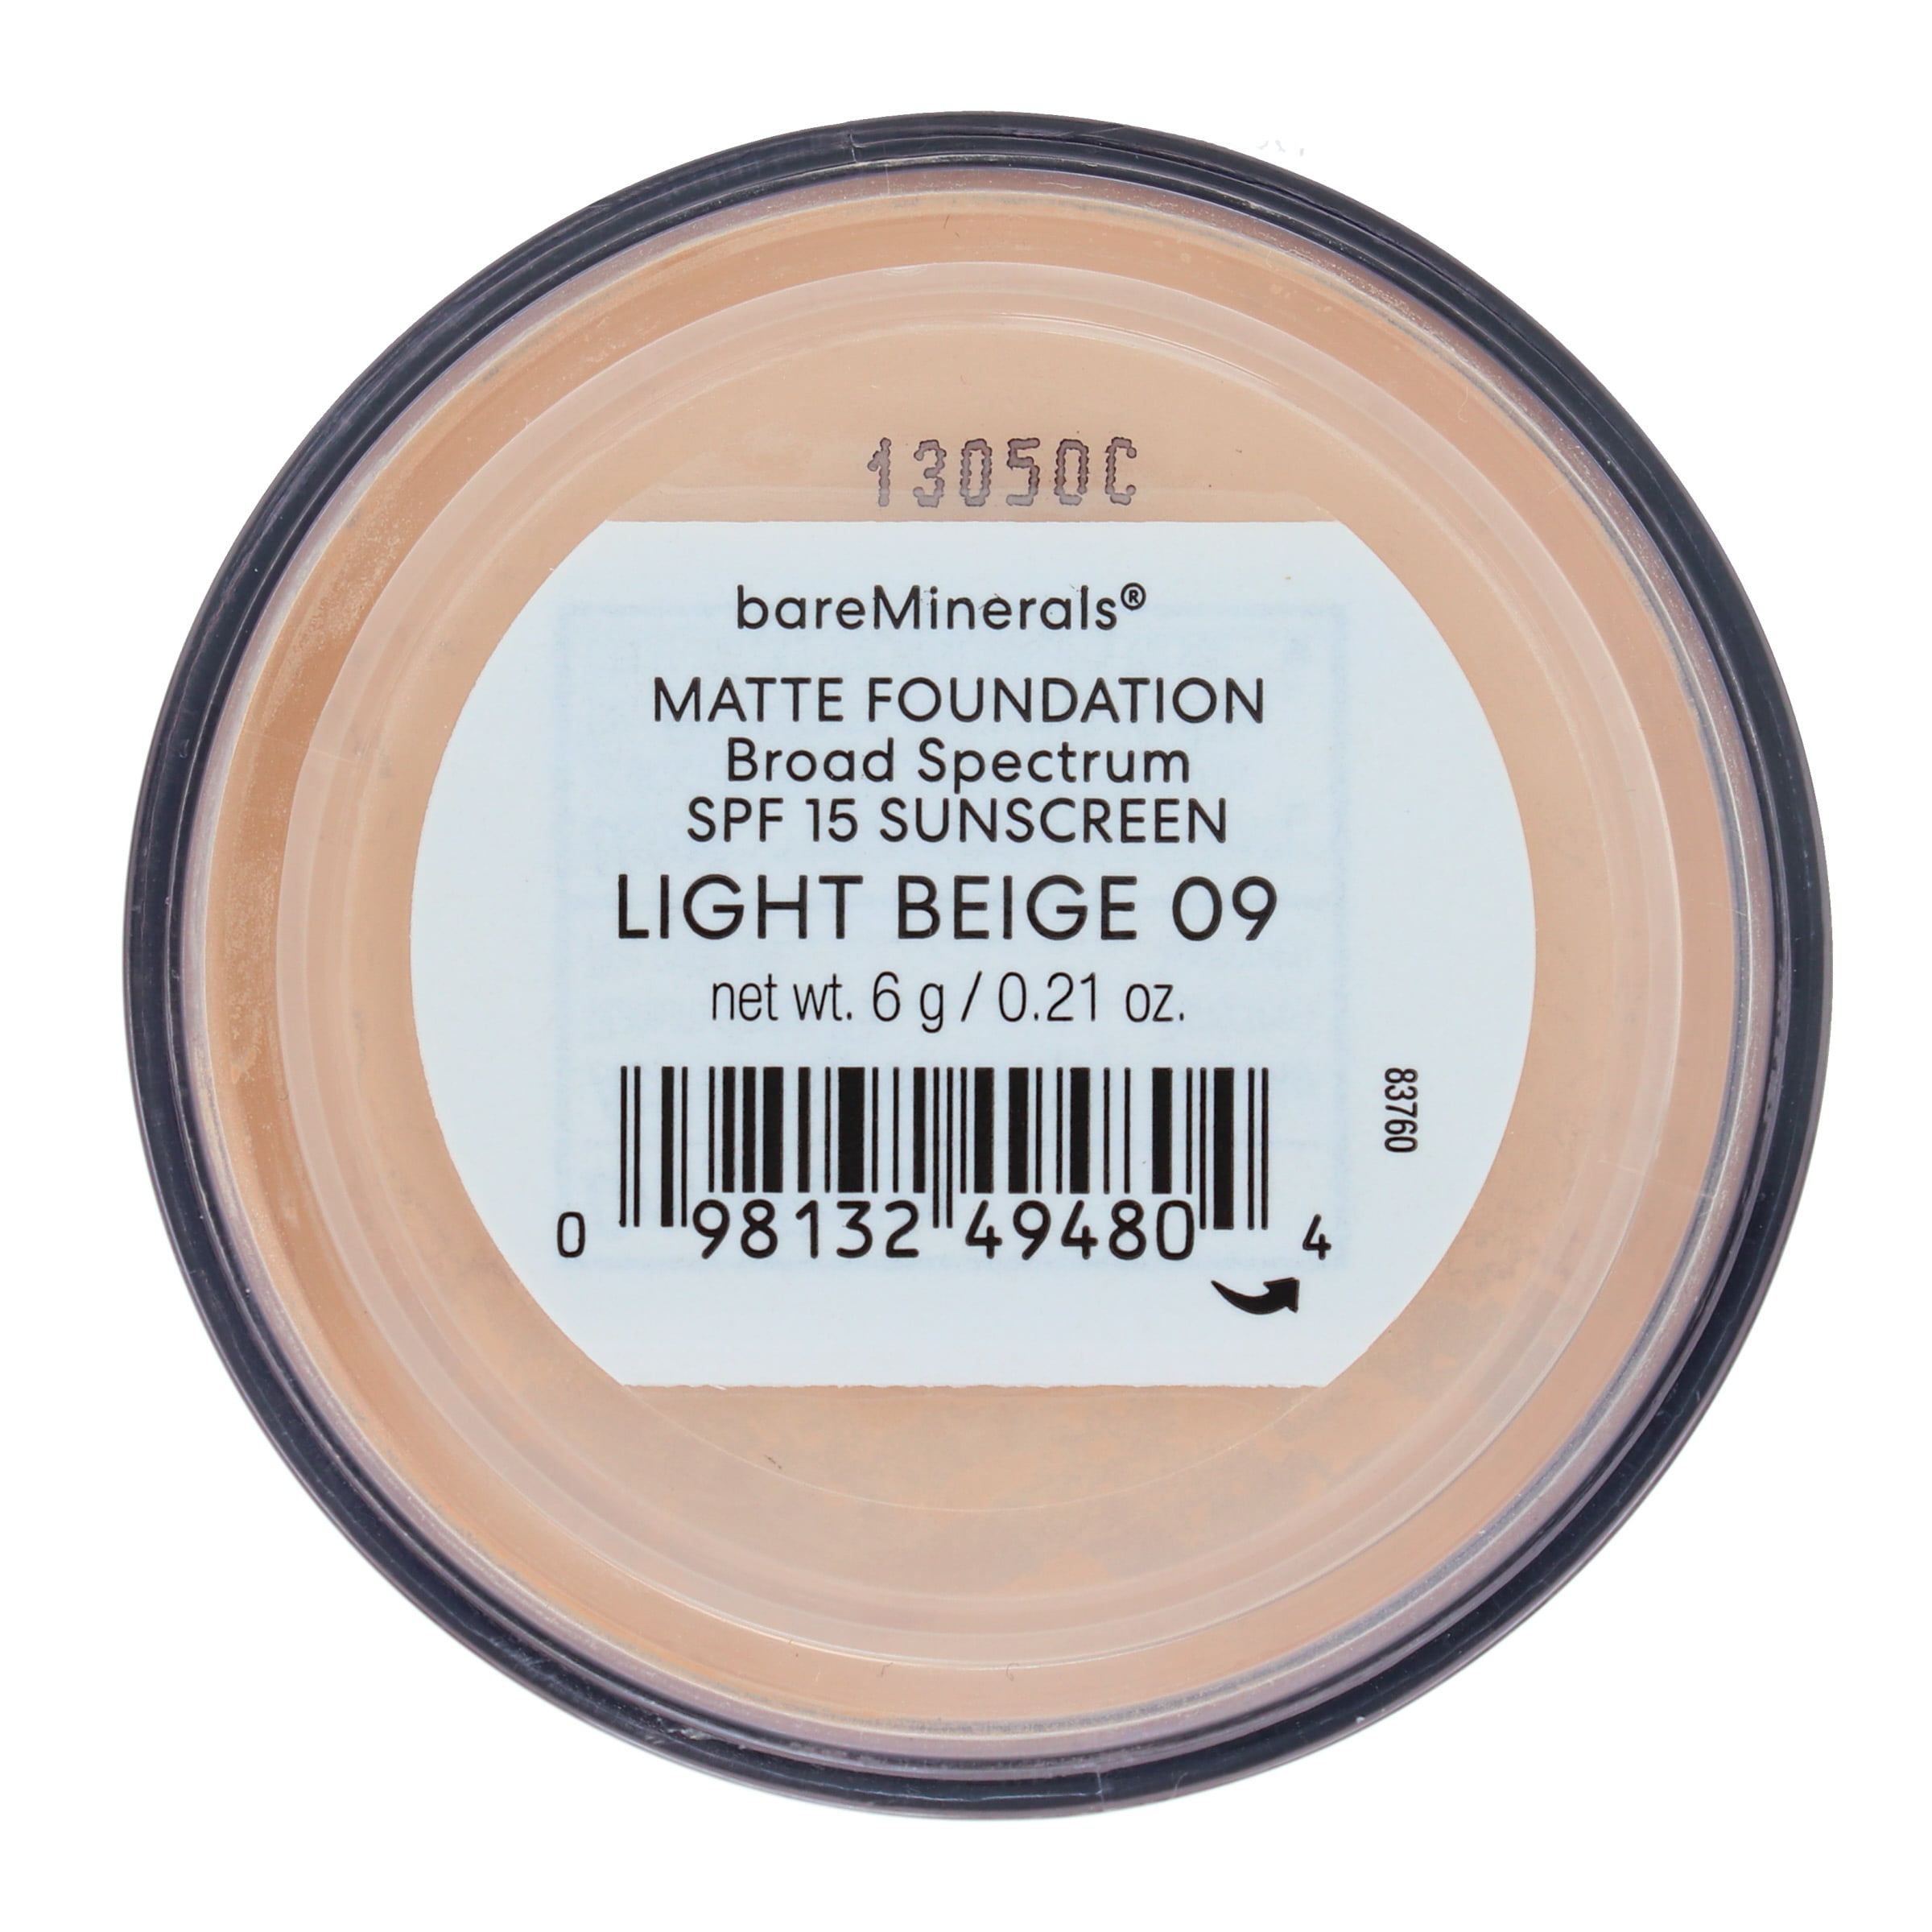 bareMinerals Matte 15 Spectrum Broad Beige oz Light Foundation 09 0.21 SPF